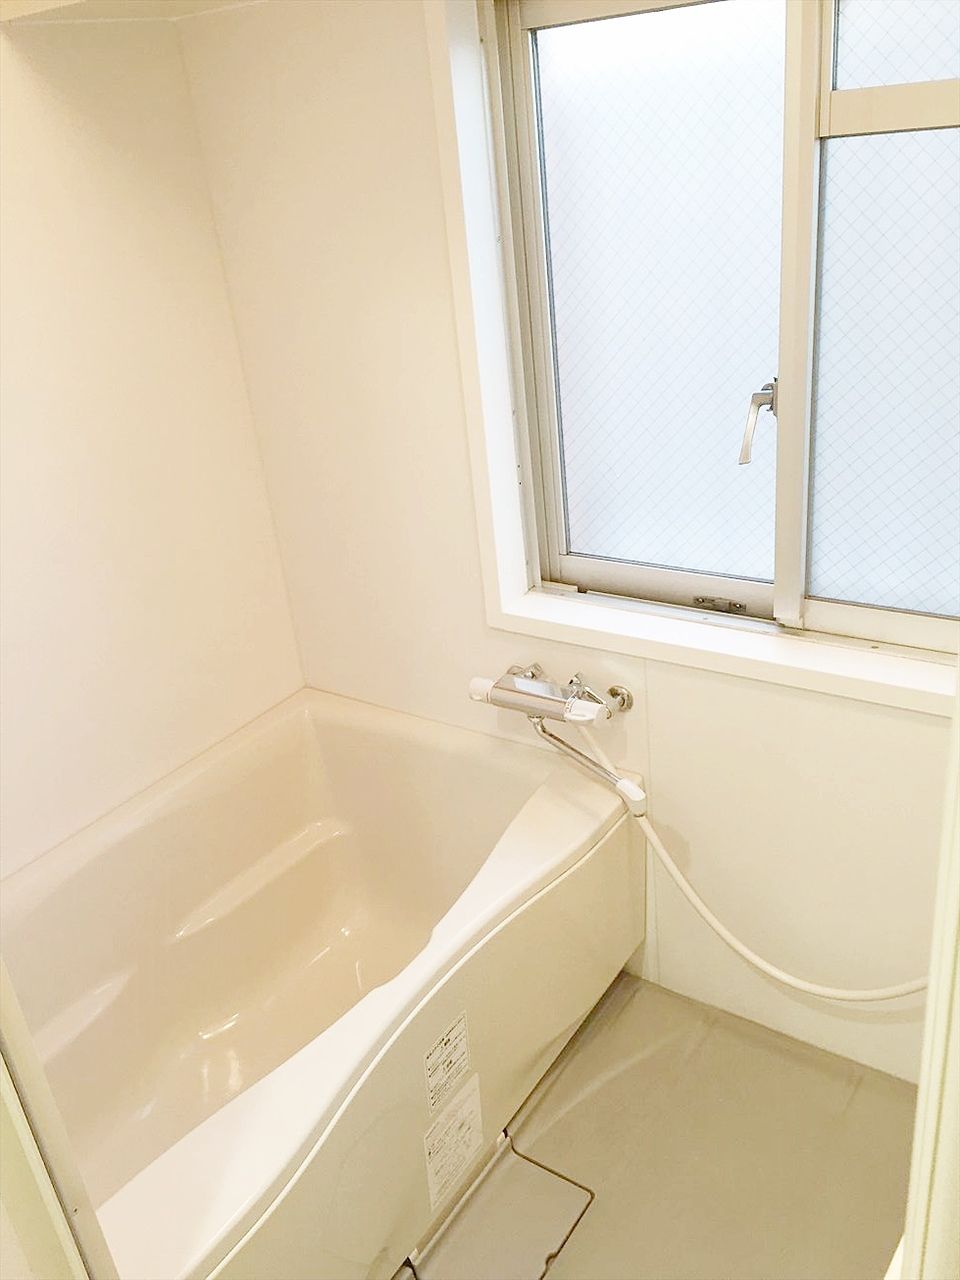 アゼリア青新ビル401号室のお風呂は窓があり湿気がこもりません